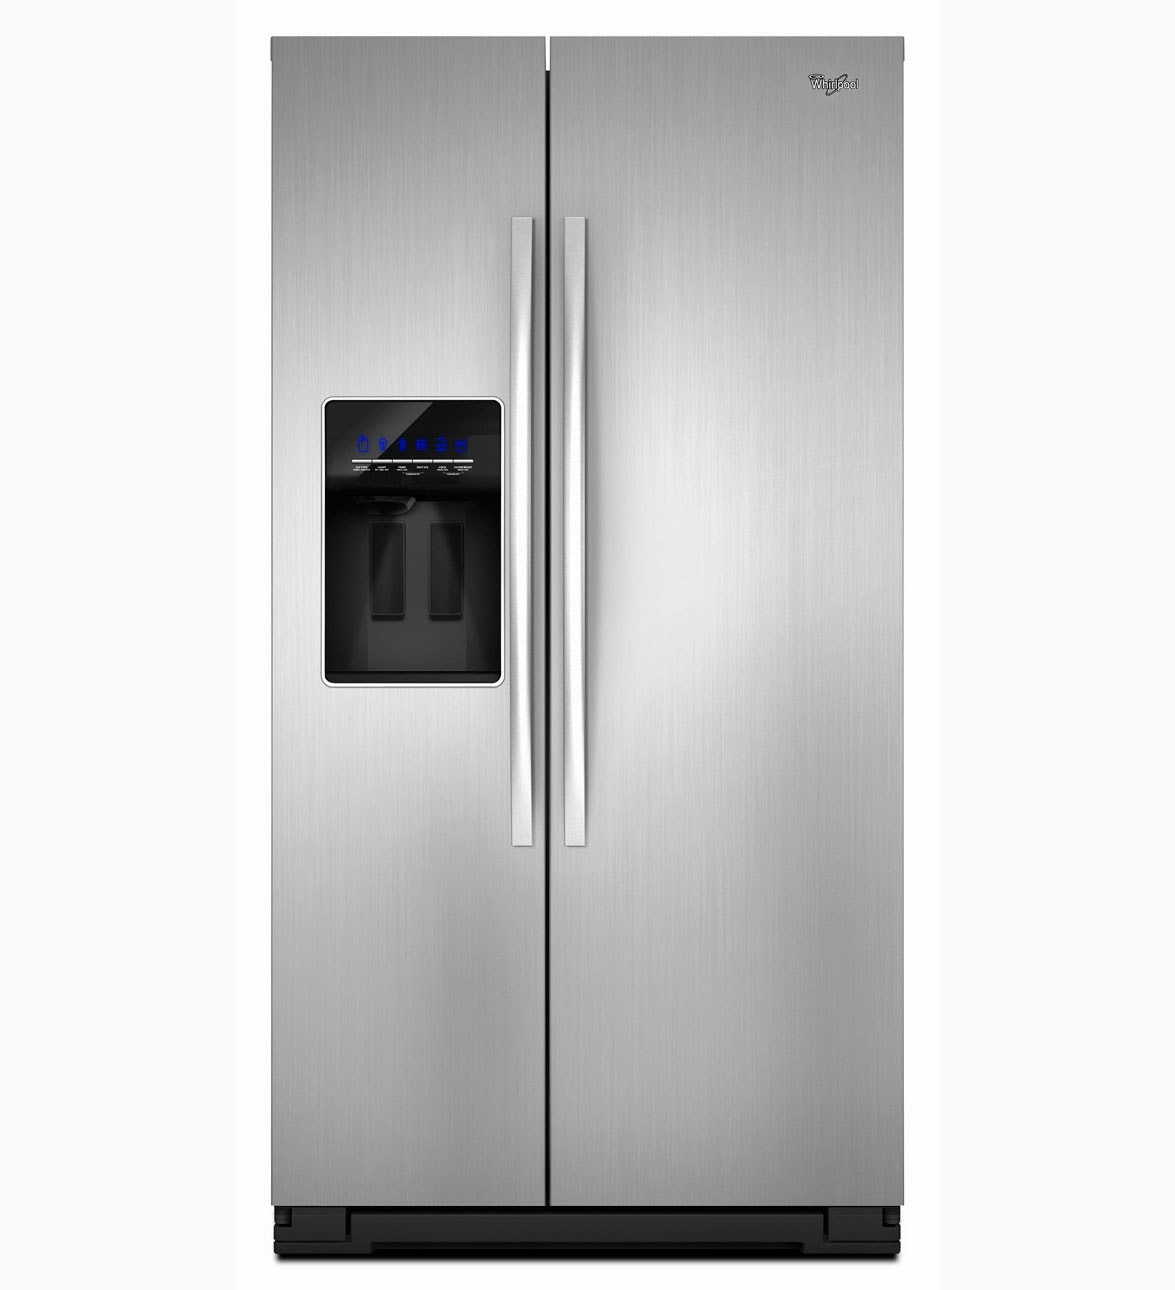 whirlpool-refrigerator-brand-gss30c6eyb-refrigerator